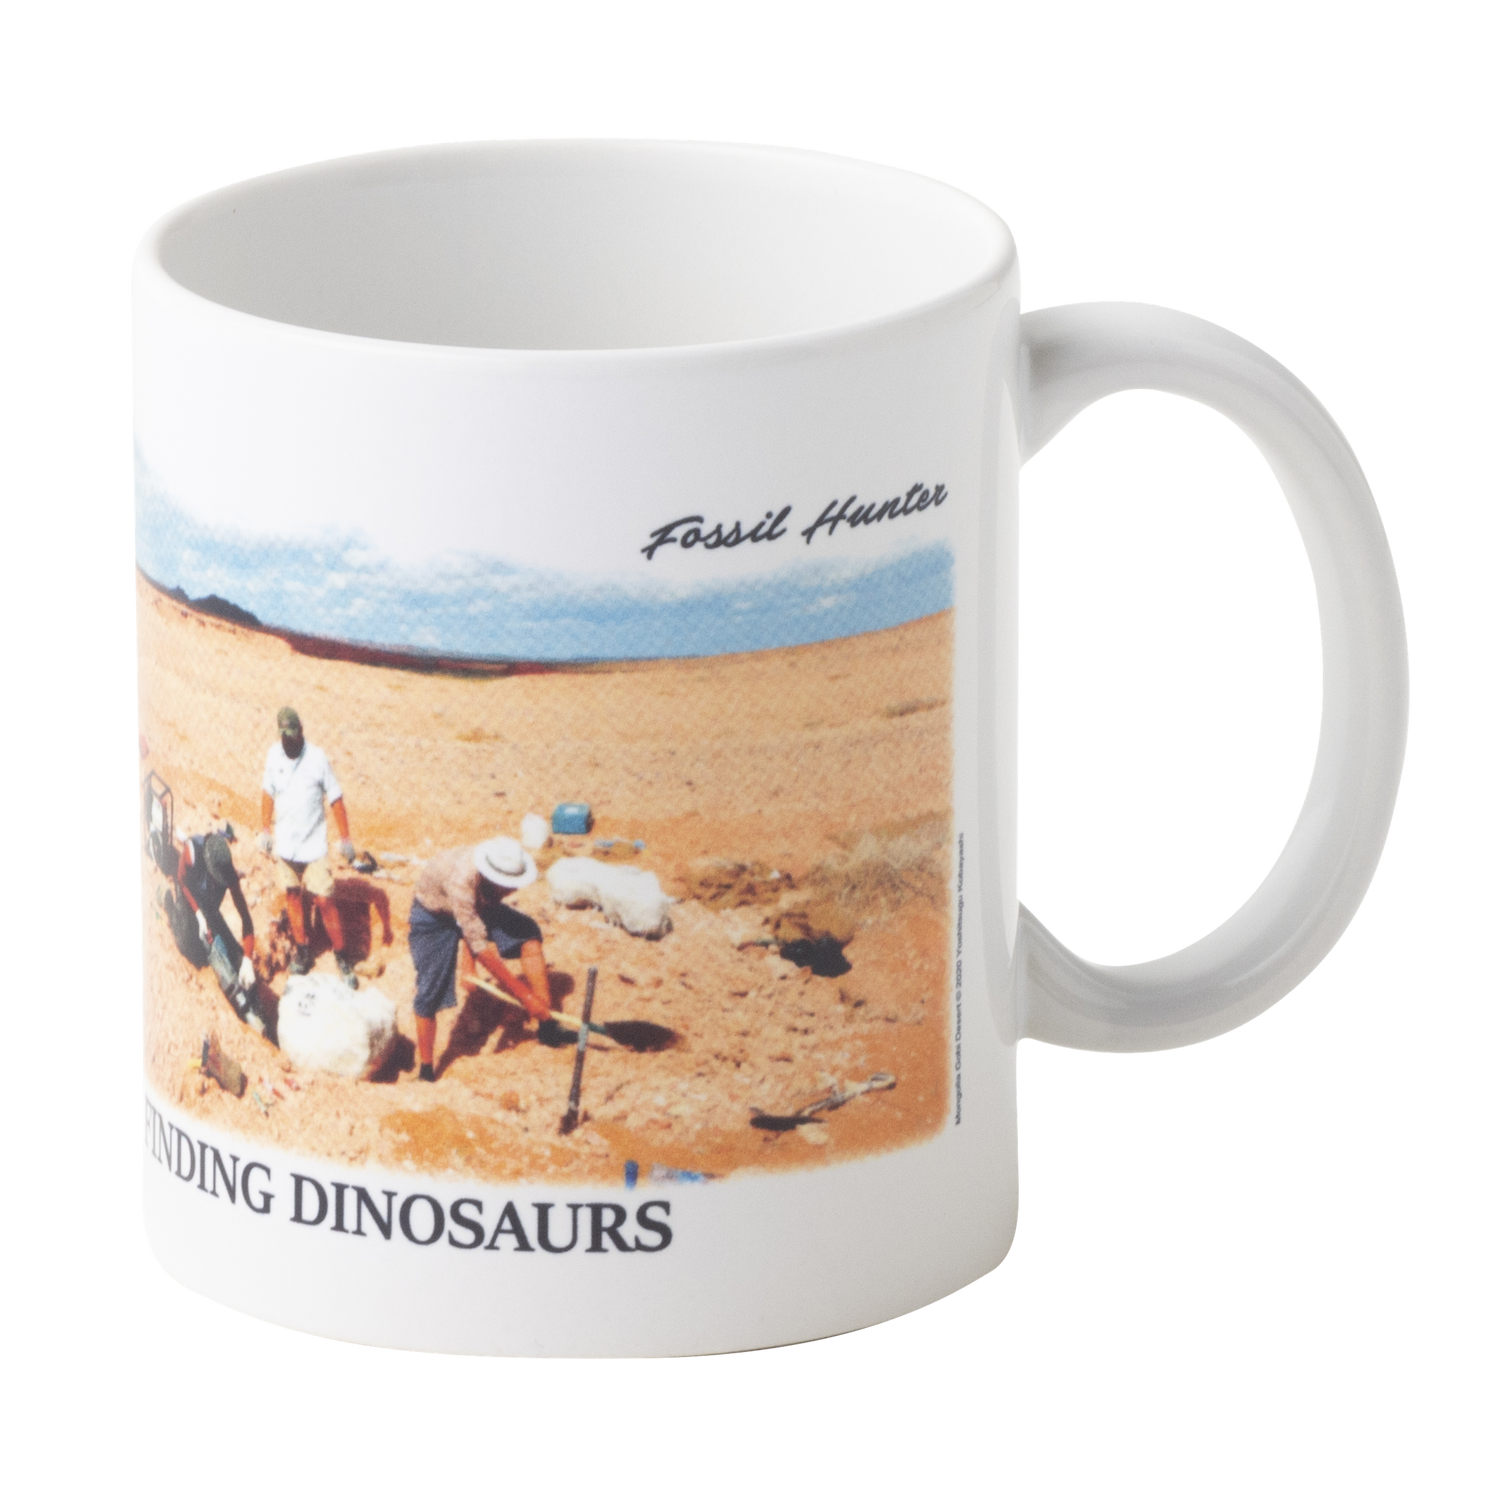 FINDING DINOSAURS Fossil Hunter Mug